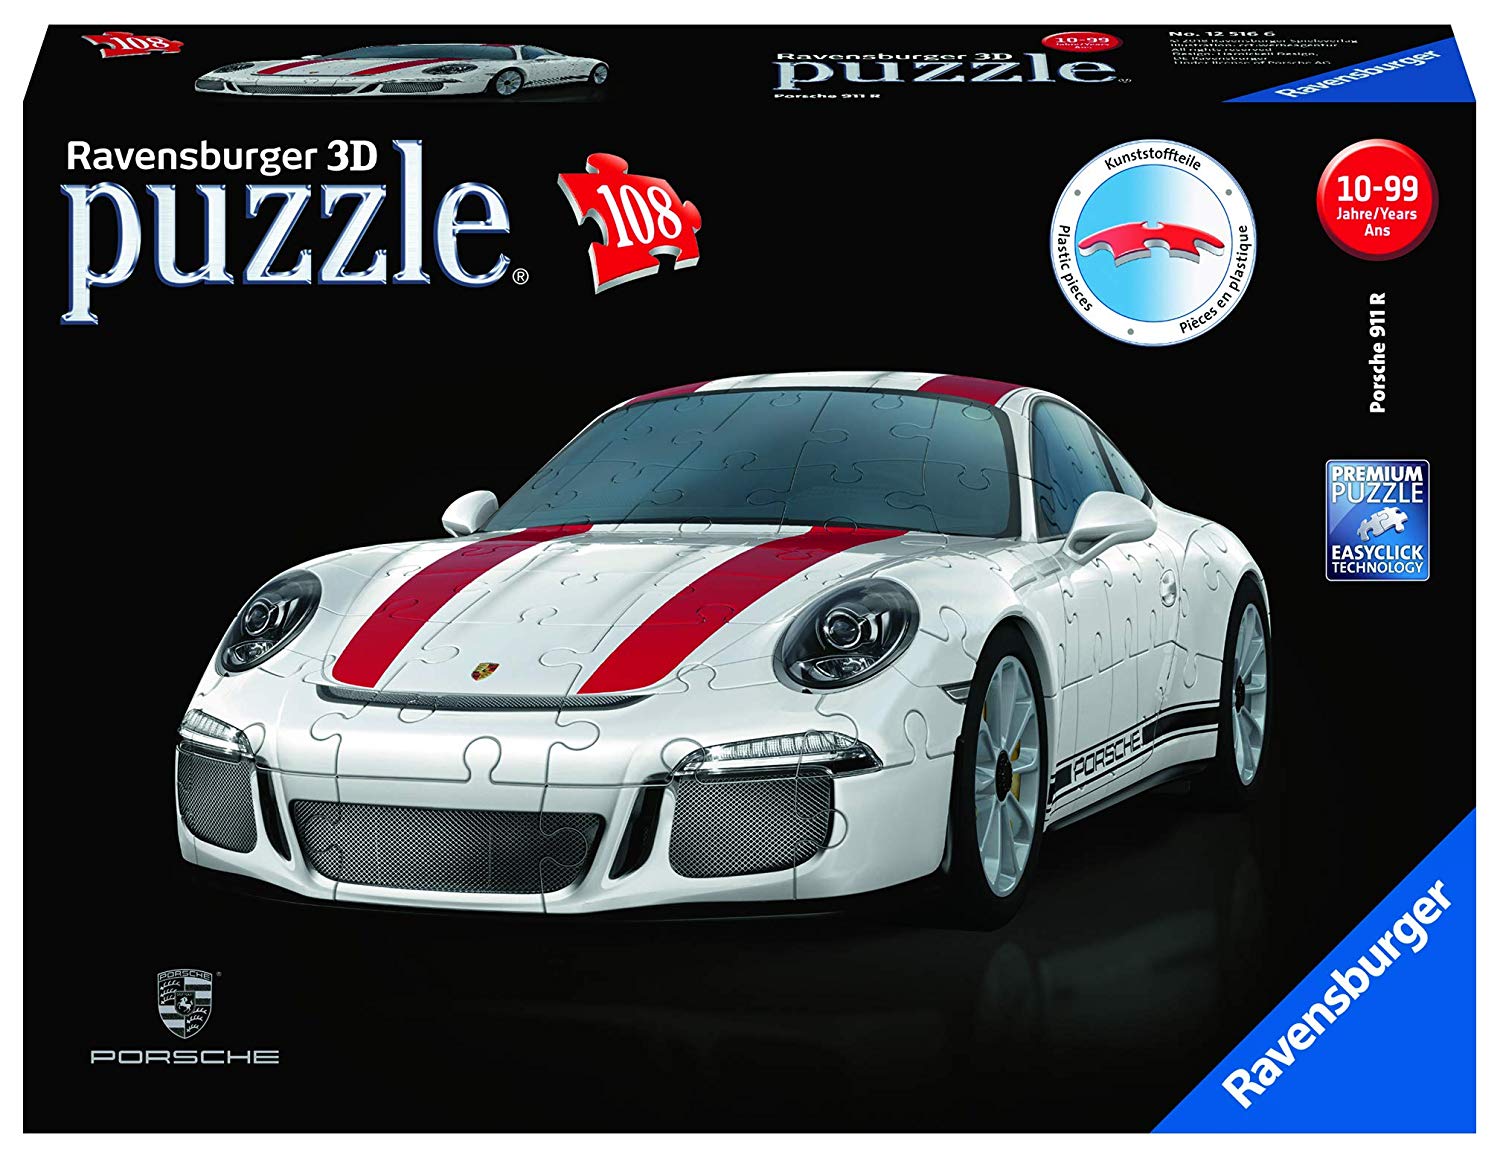 Ravensburger Adult Puzzle 12528” Inch Porsche 911 R 3D Puzzle, Multi-Colour